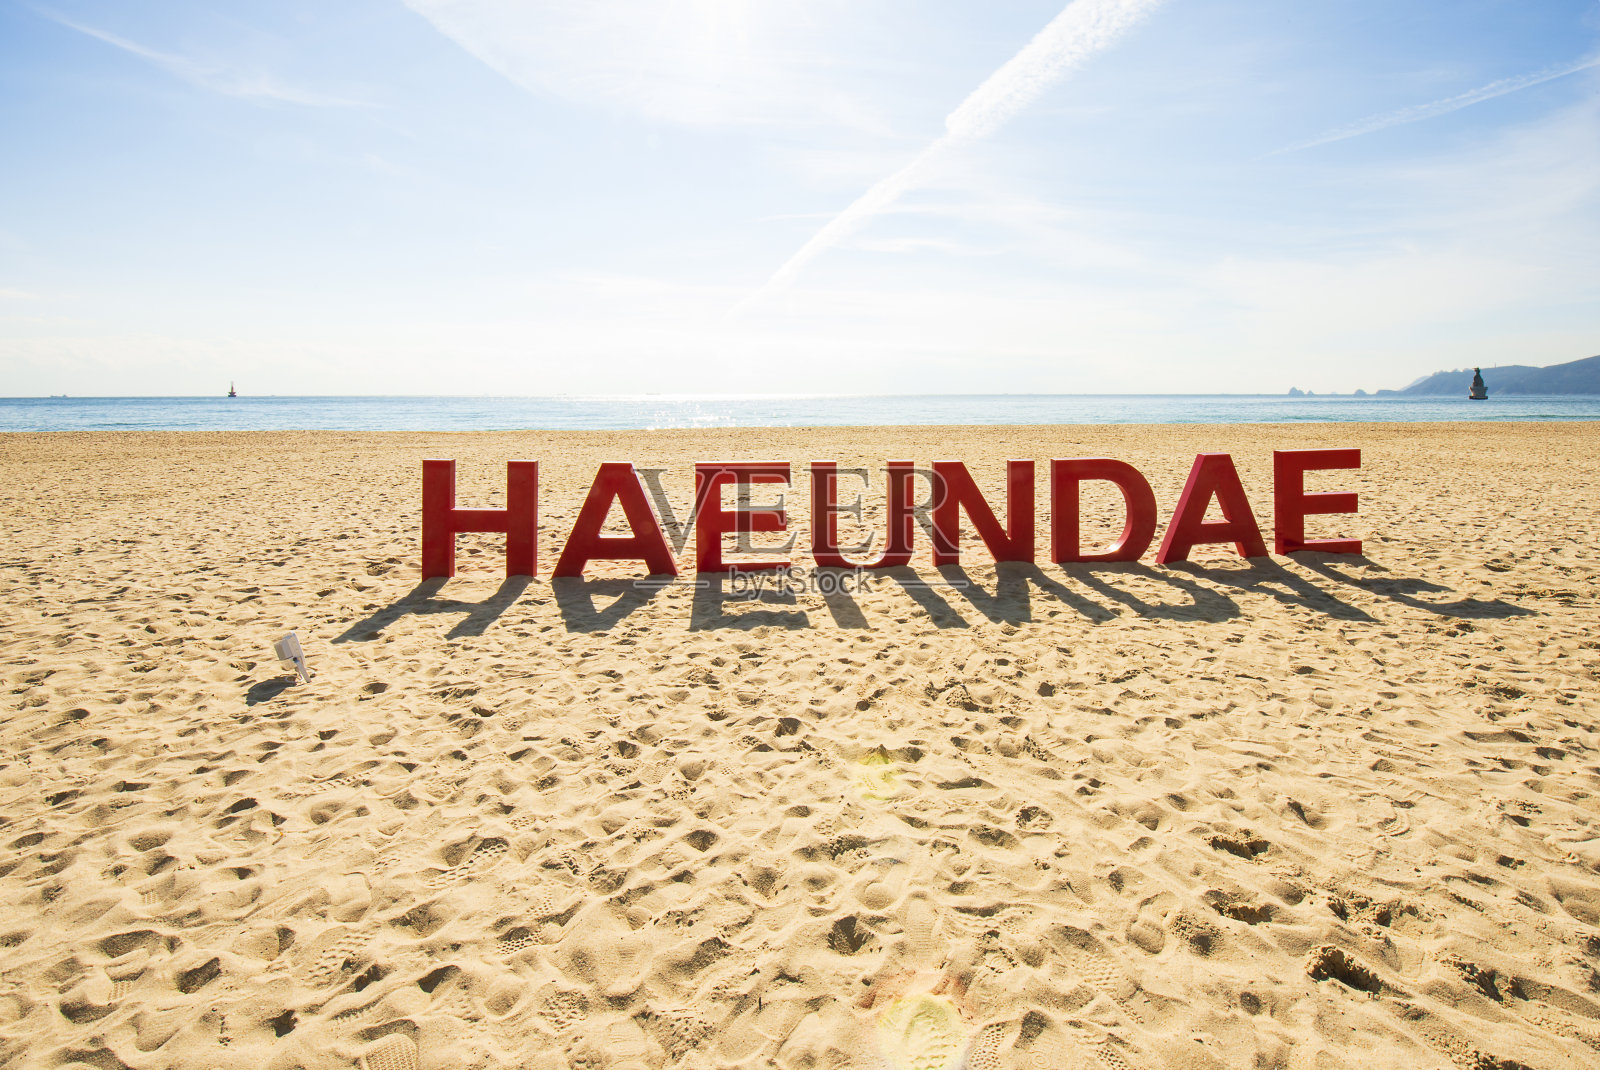 釜山海滩上的“Haeudae”3D文字标志照片摄影图片